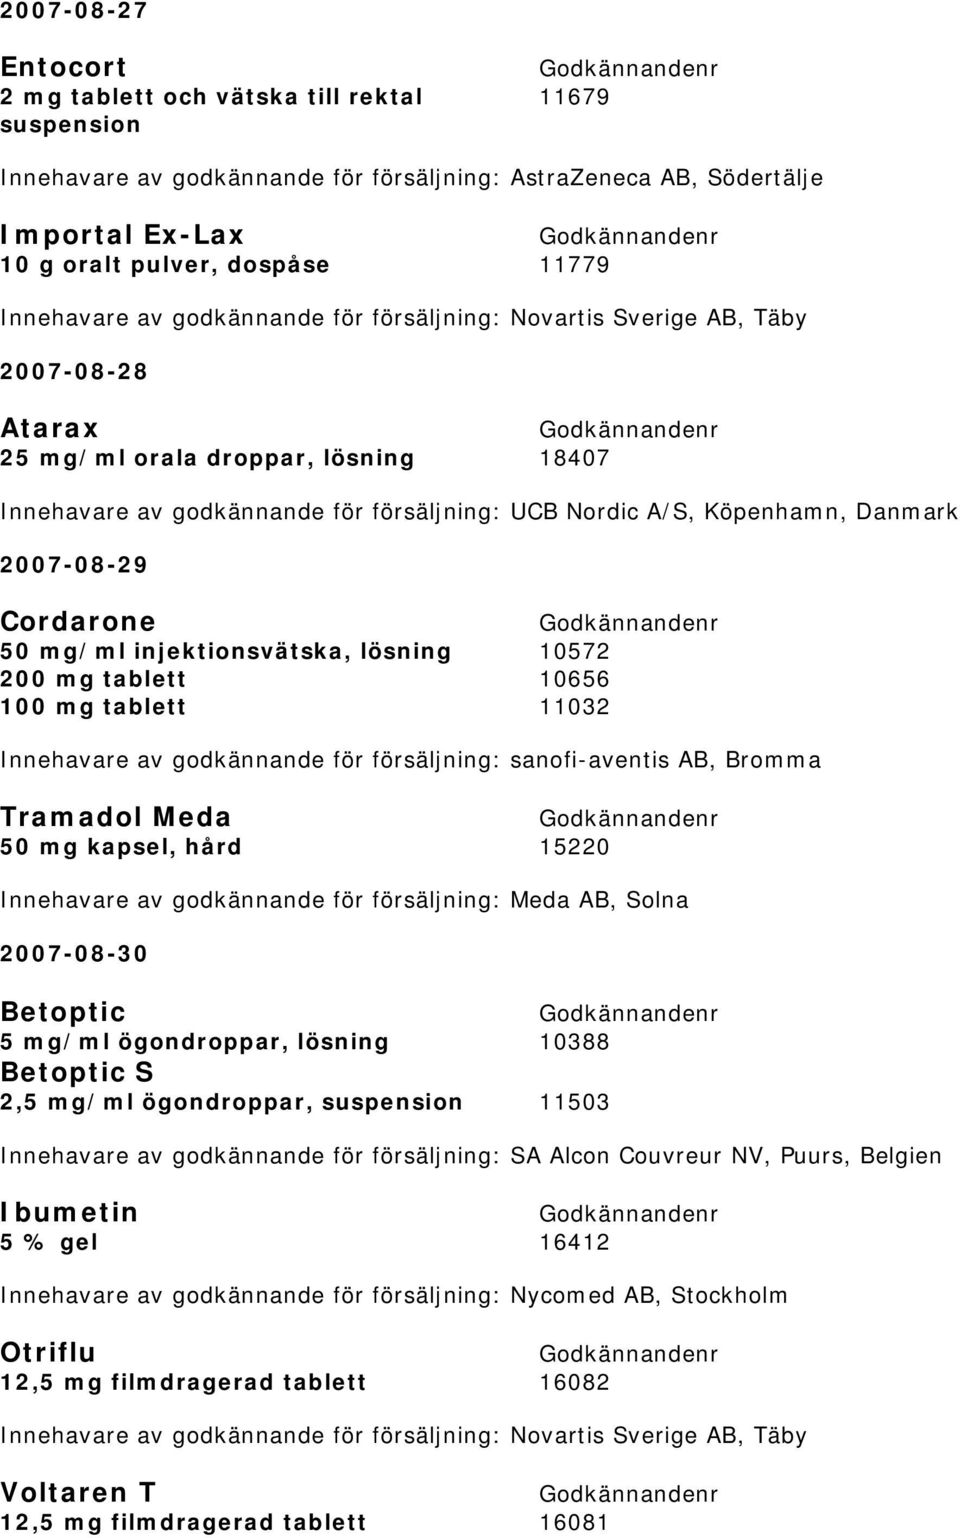 Danmark 2007-08-29 Cordarone 50 mg/ml injektionsvätska, lösning 10572 200 mg tablett 10656 100 mg tablett 11032 Innehavare av godkännande för försäljning: sanofi-aventis AB, Bromma Tramadol Meda 50